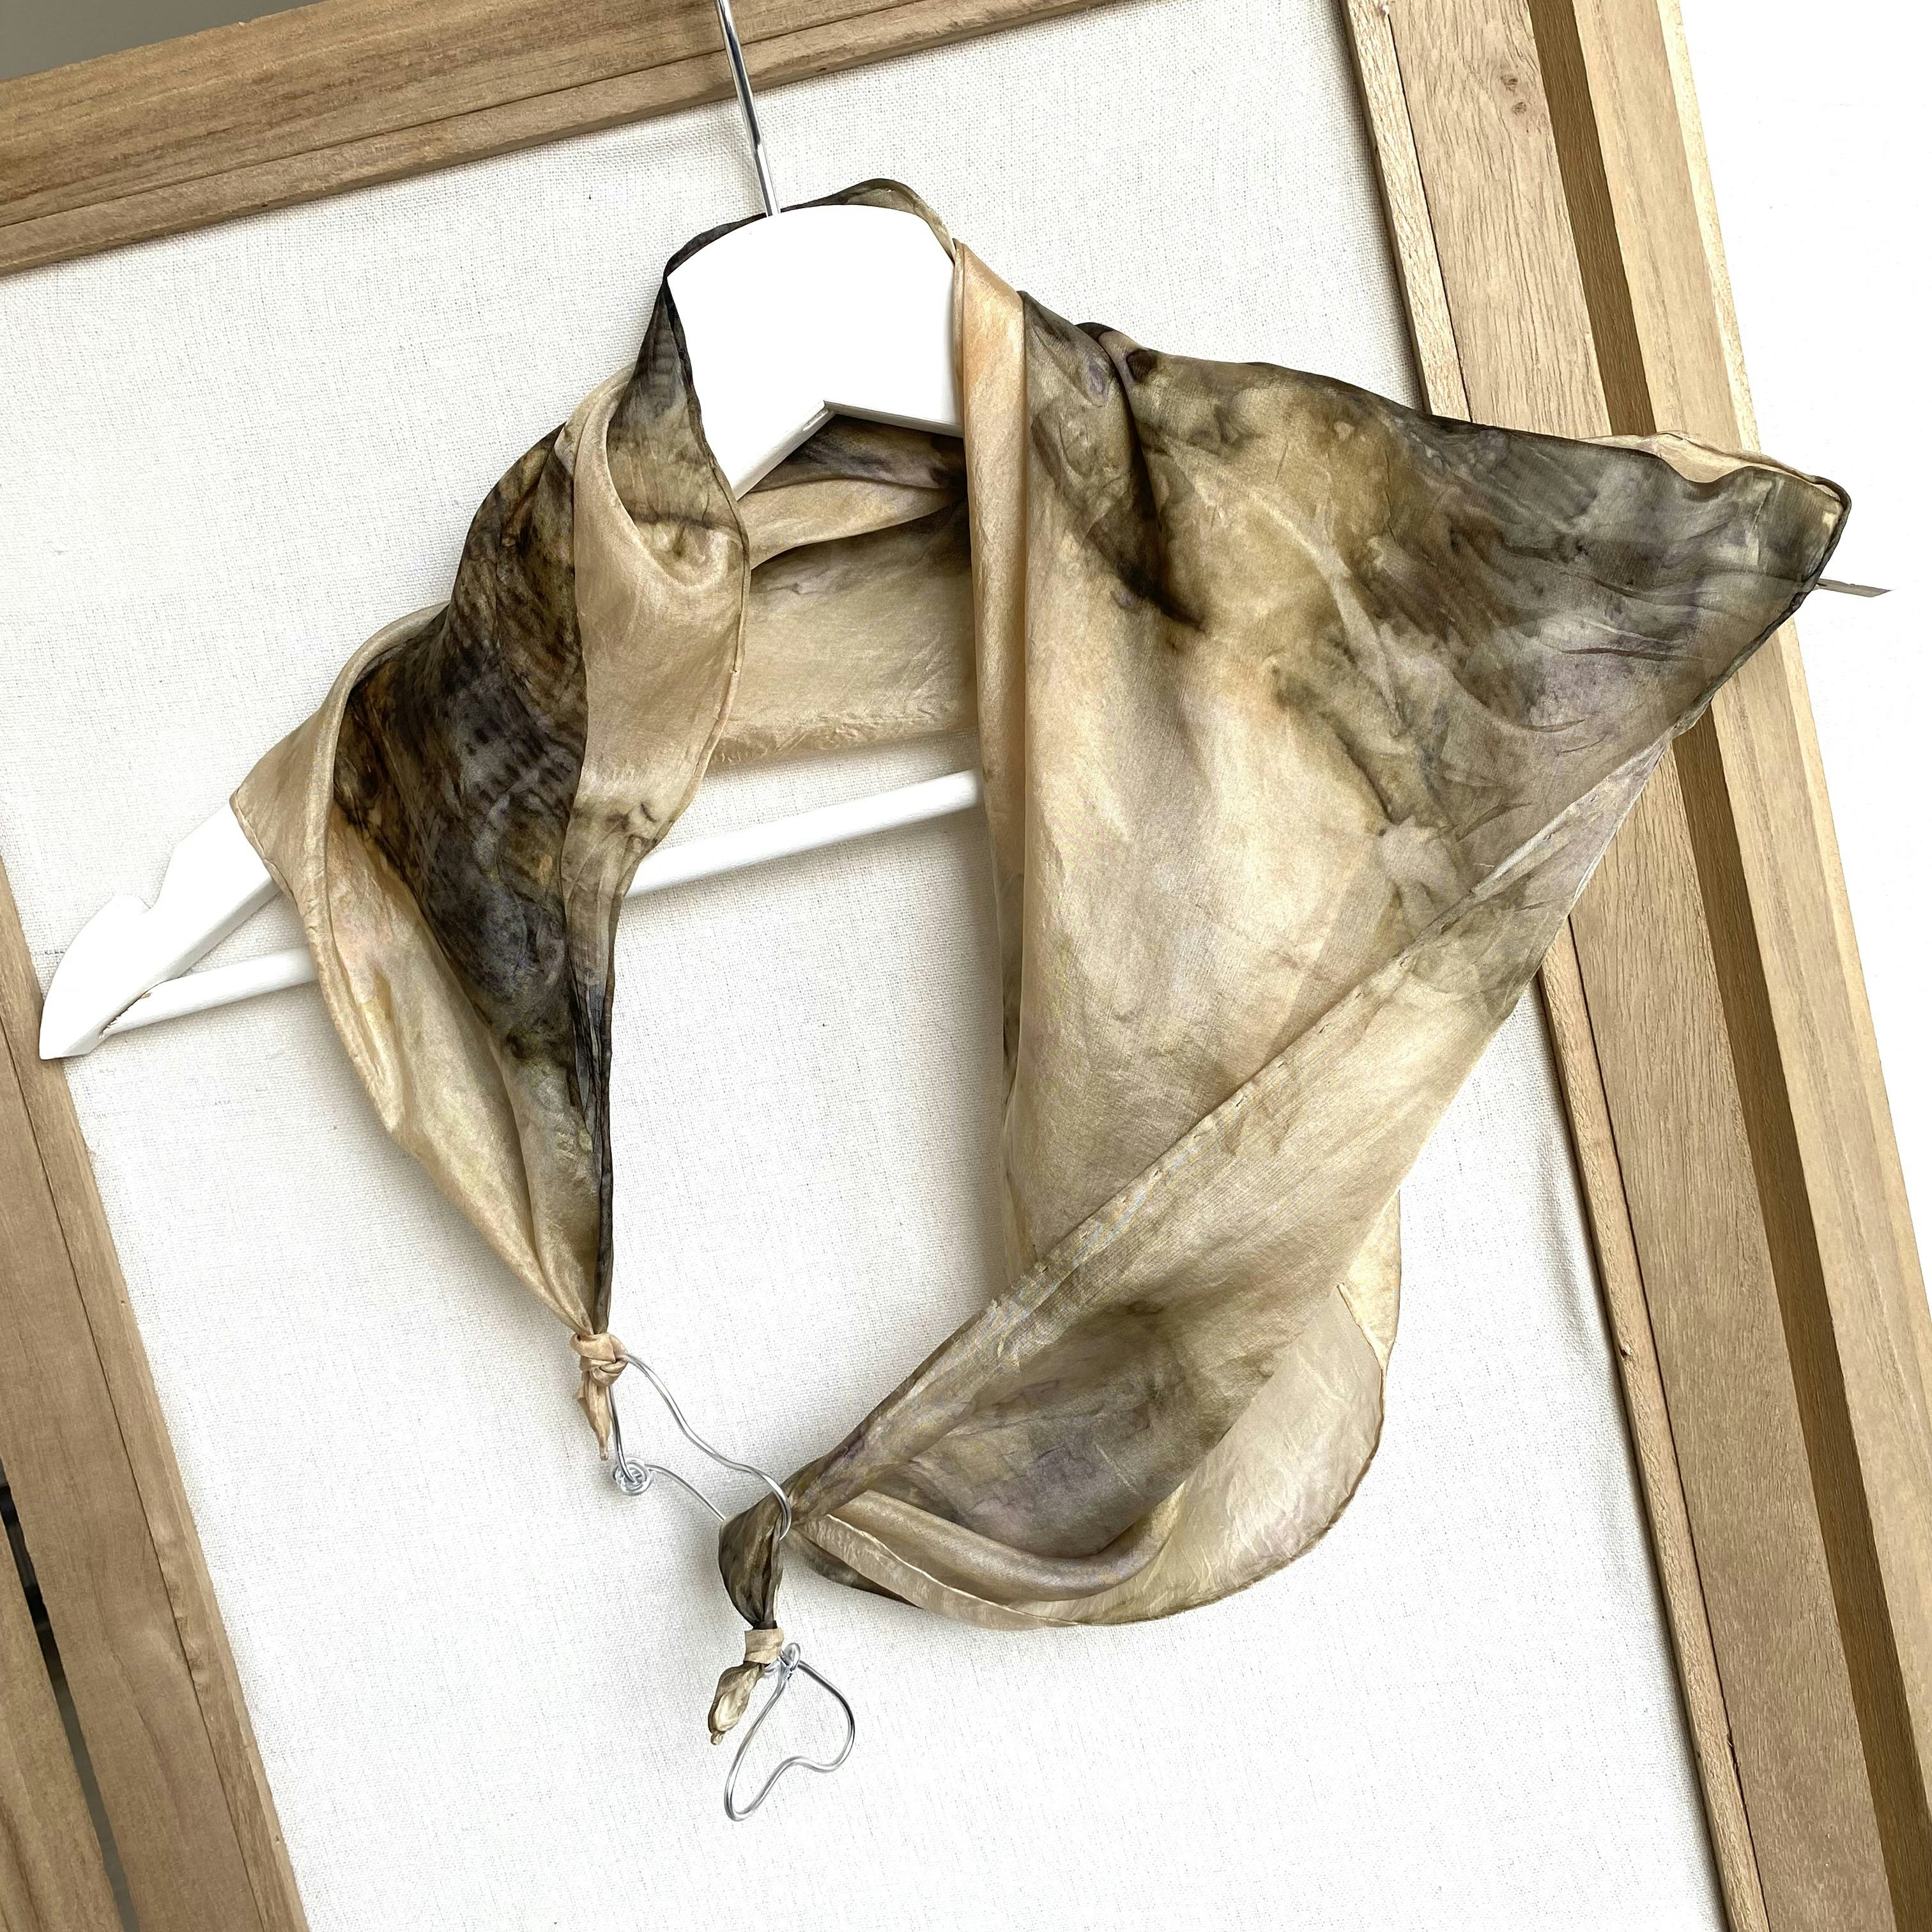 Foulard gioielli di seta tinto con foglie di acero, prodotto artigianale per la vendita diretta in Svizzera